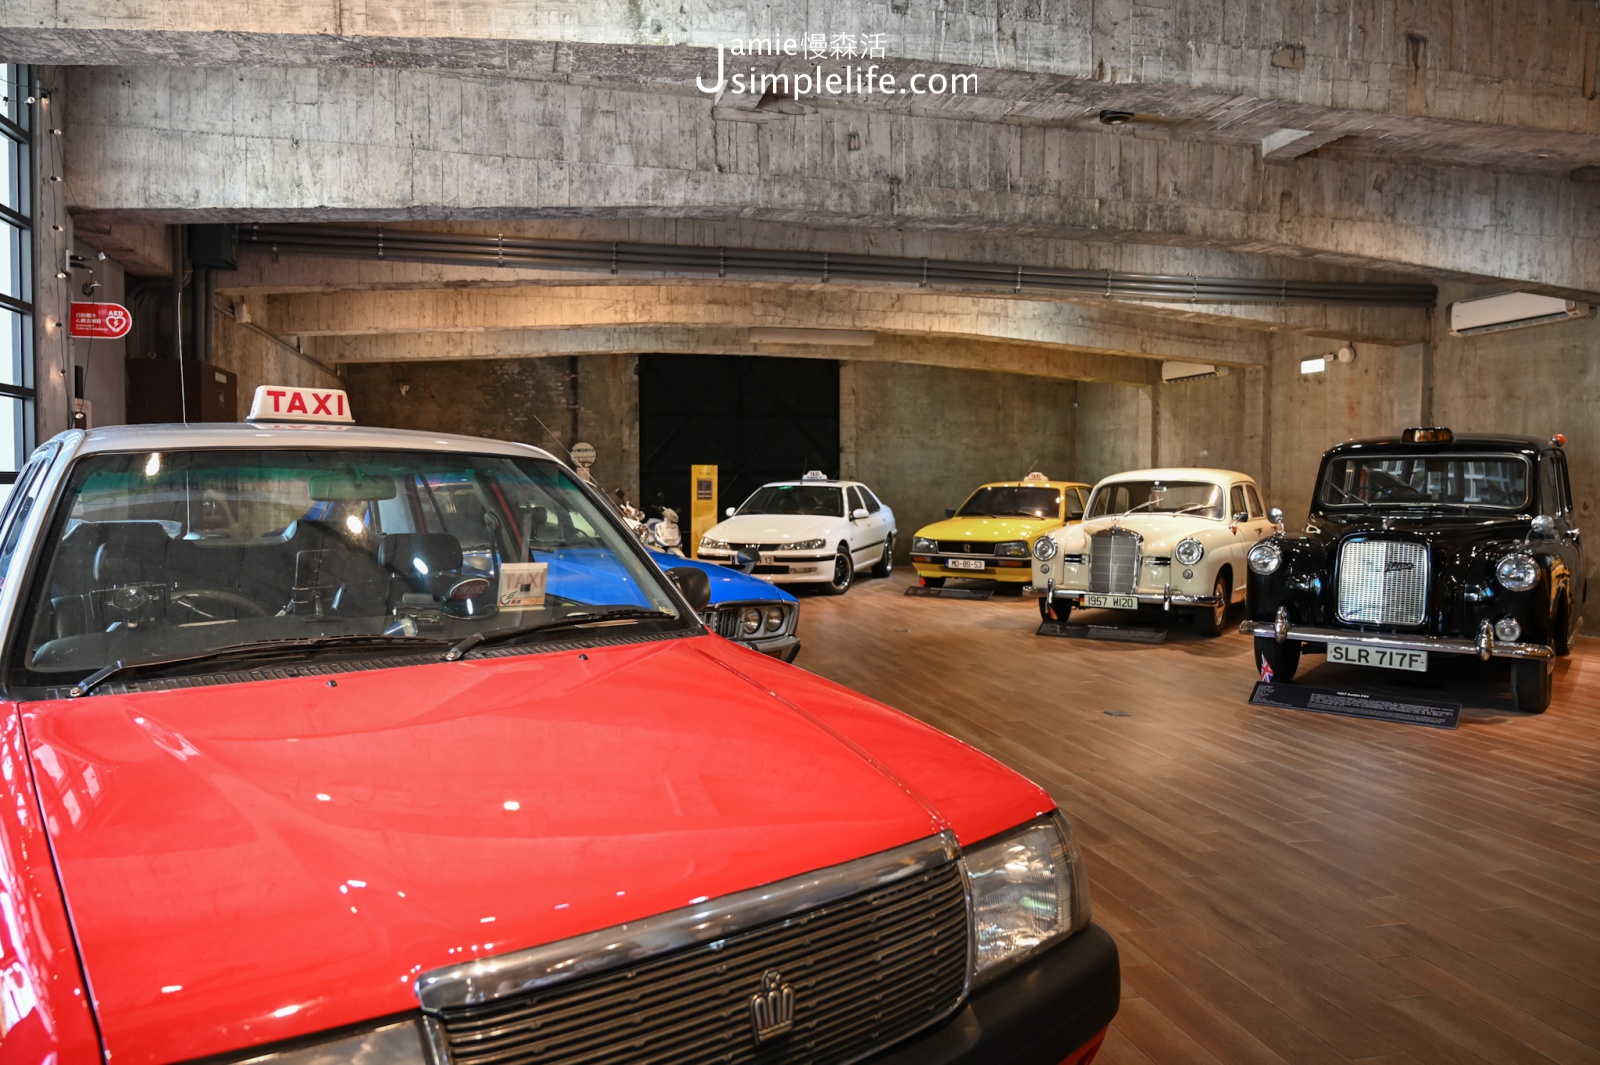 宜蘭蘇澳計程車博物館 9輛古董計程車